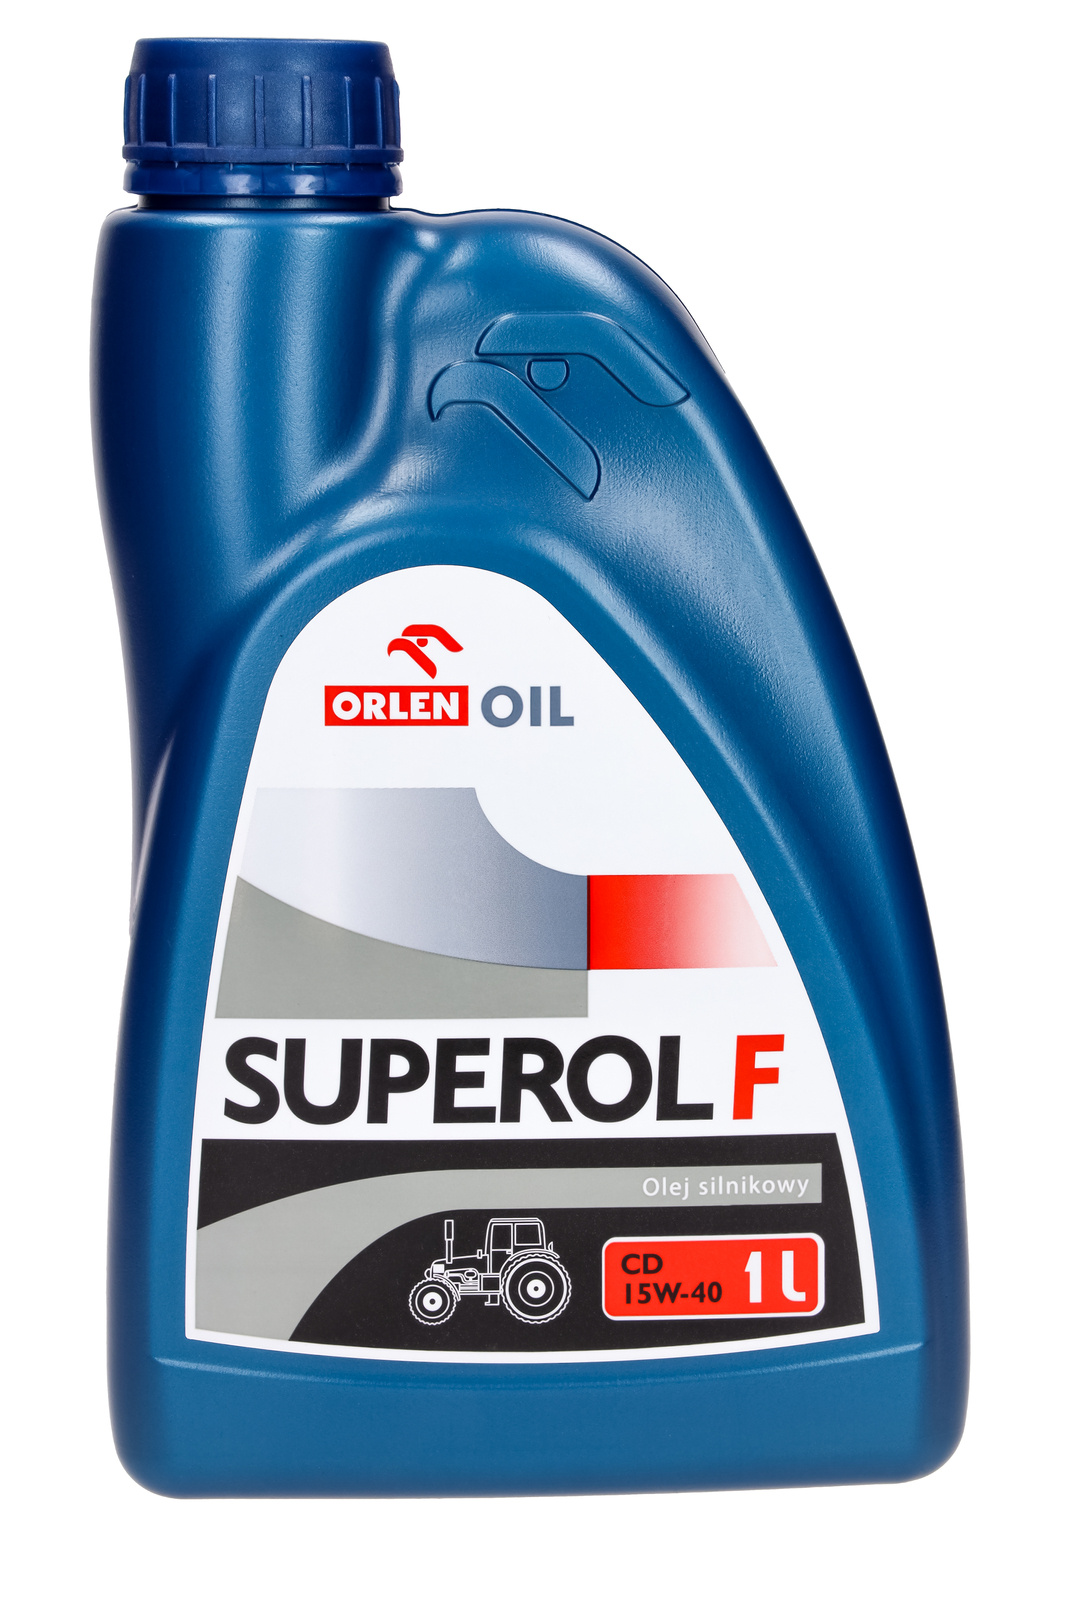 O.OIL SUPEROL F CD 15W-40 B1L